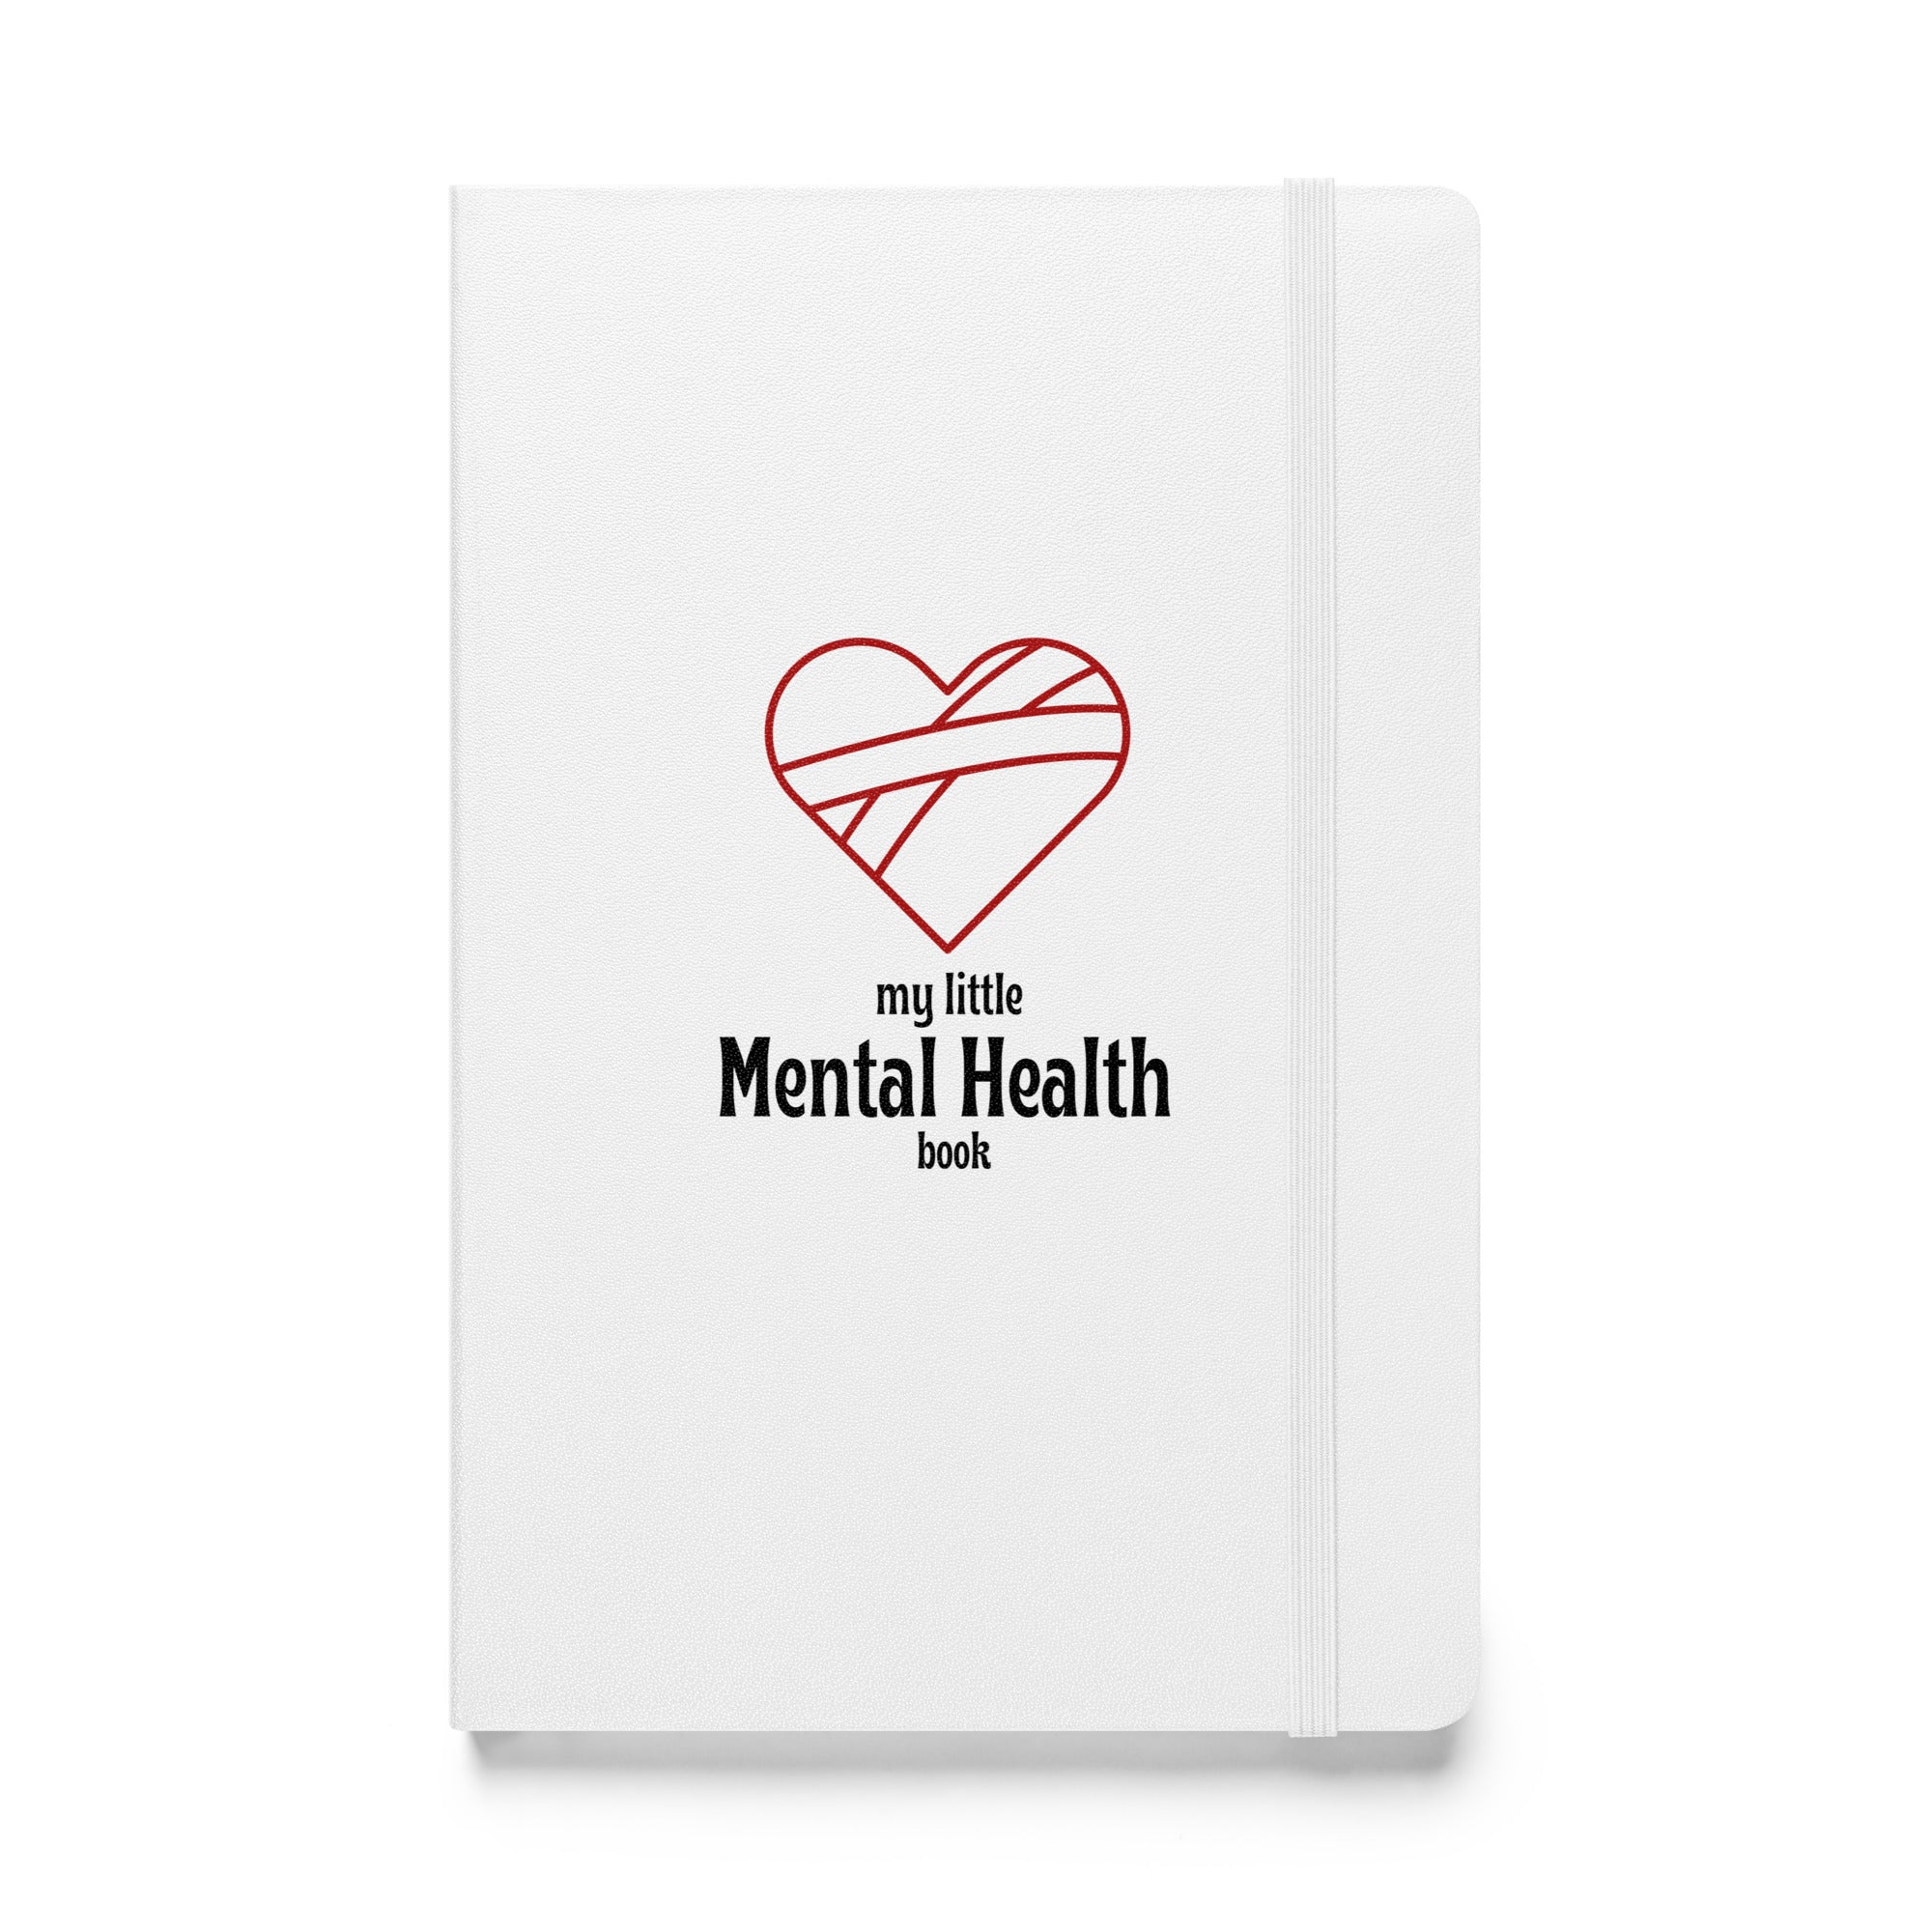 my little Mental Health book - Notebook